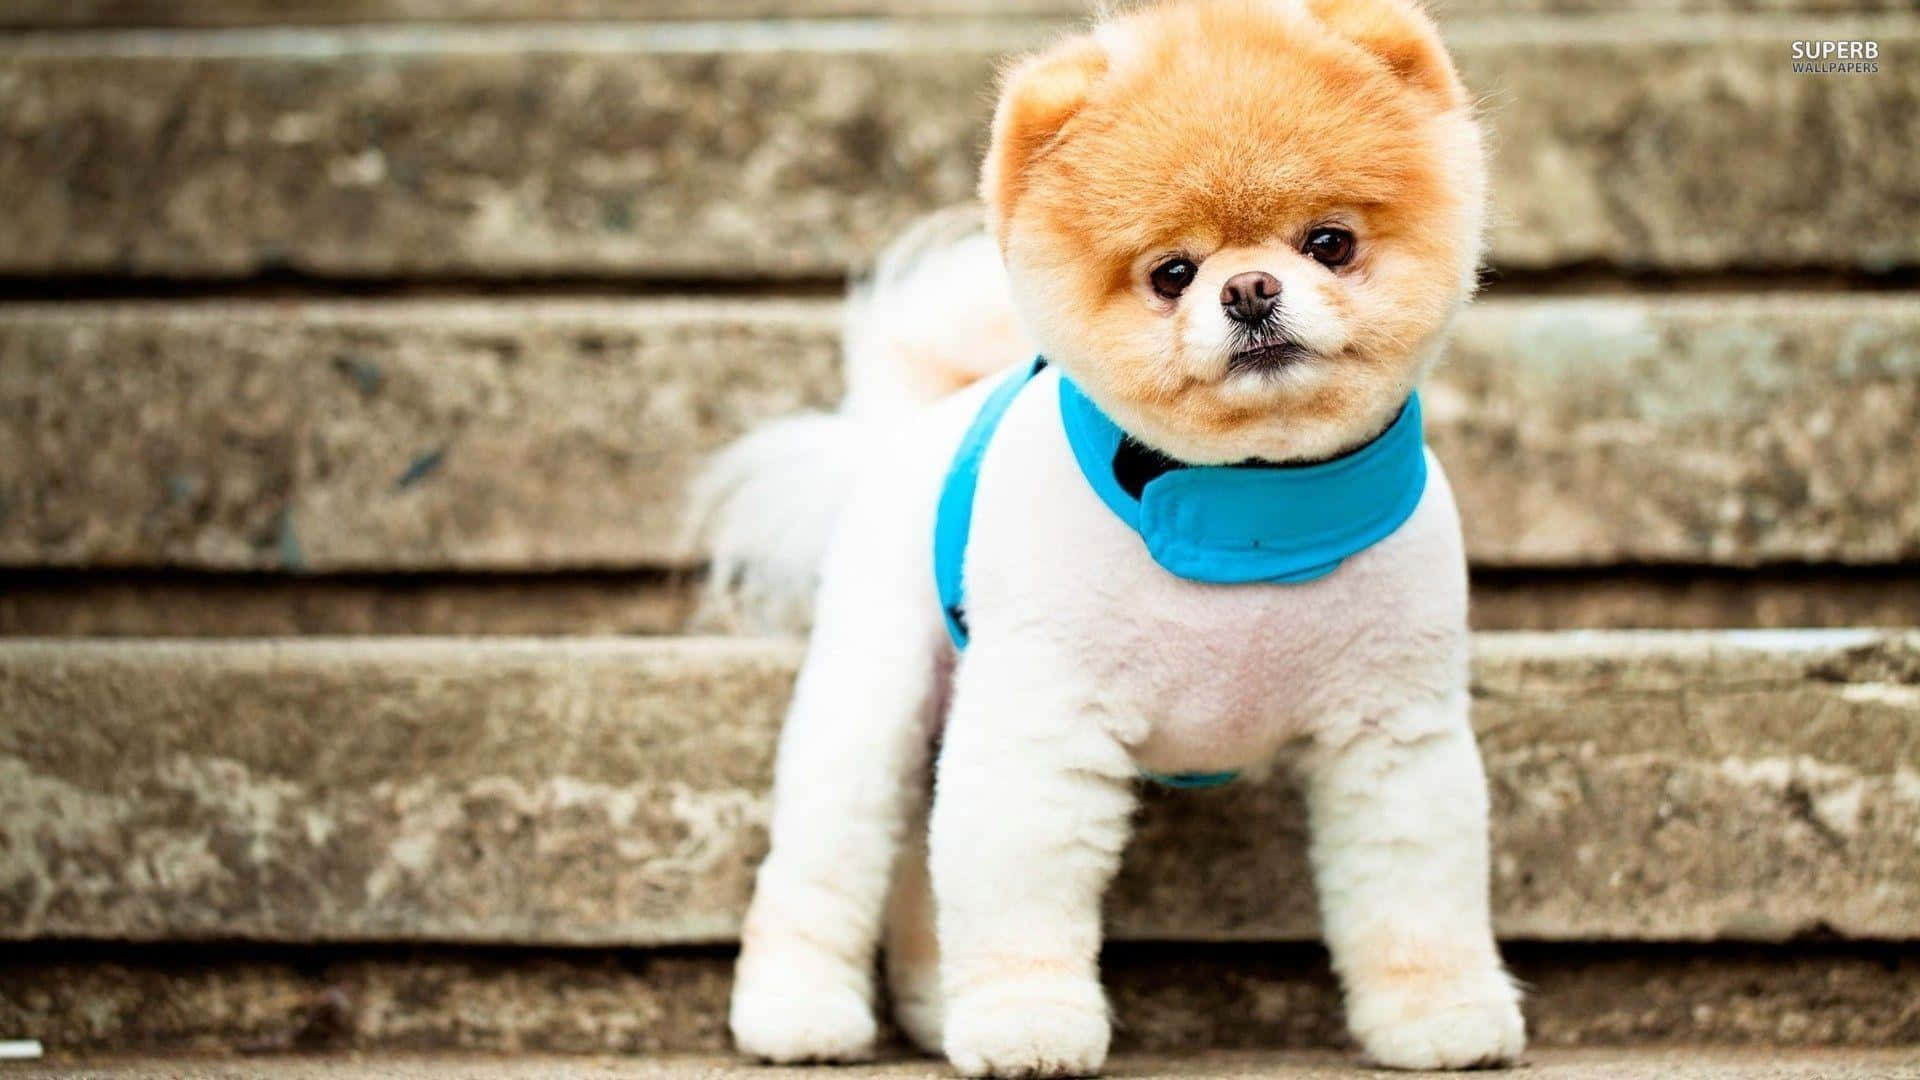 Imagende Un Cachorro Pomeranian Vestido De Manera Adorable